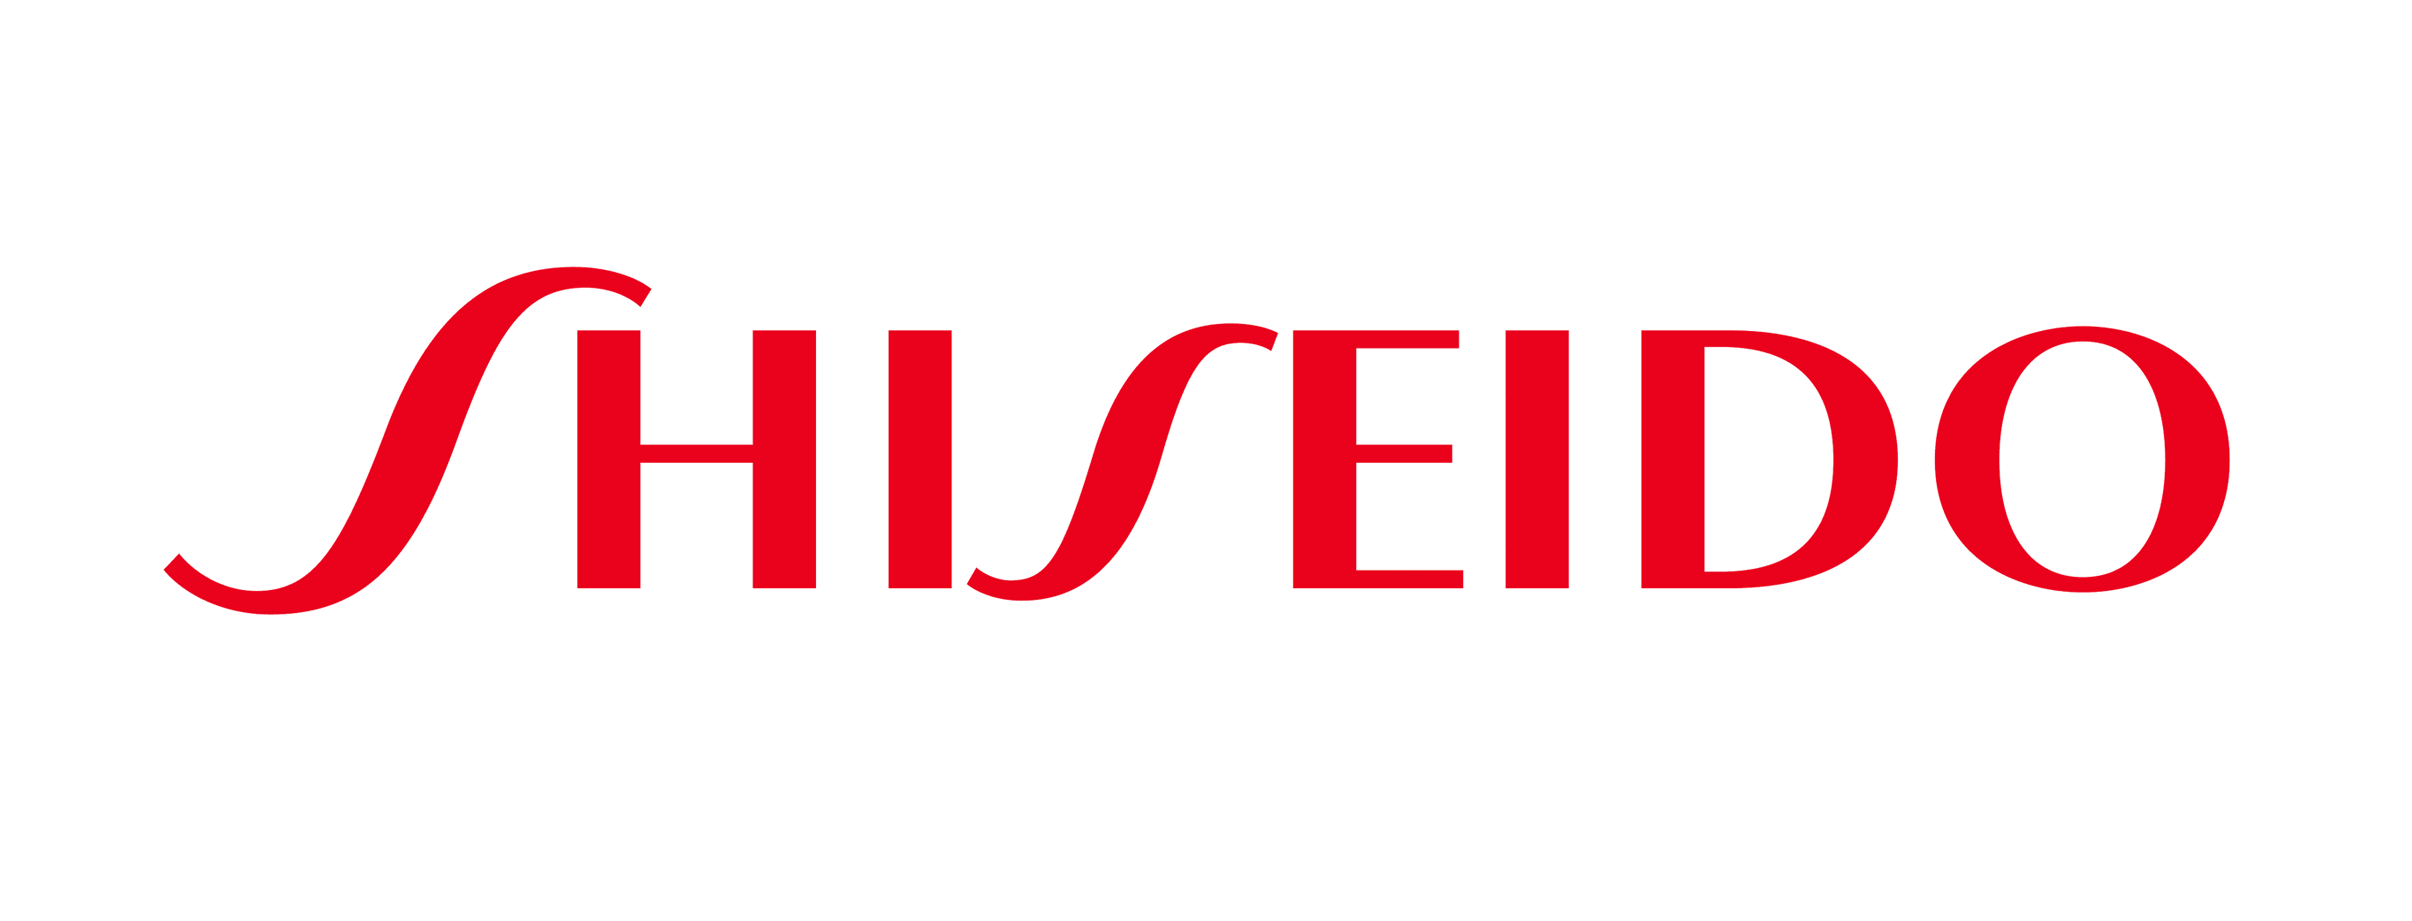 Shiseido logo.